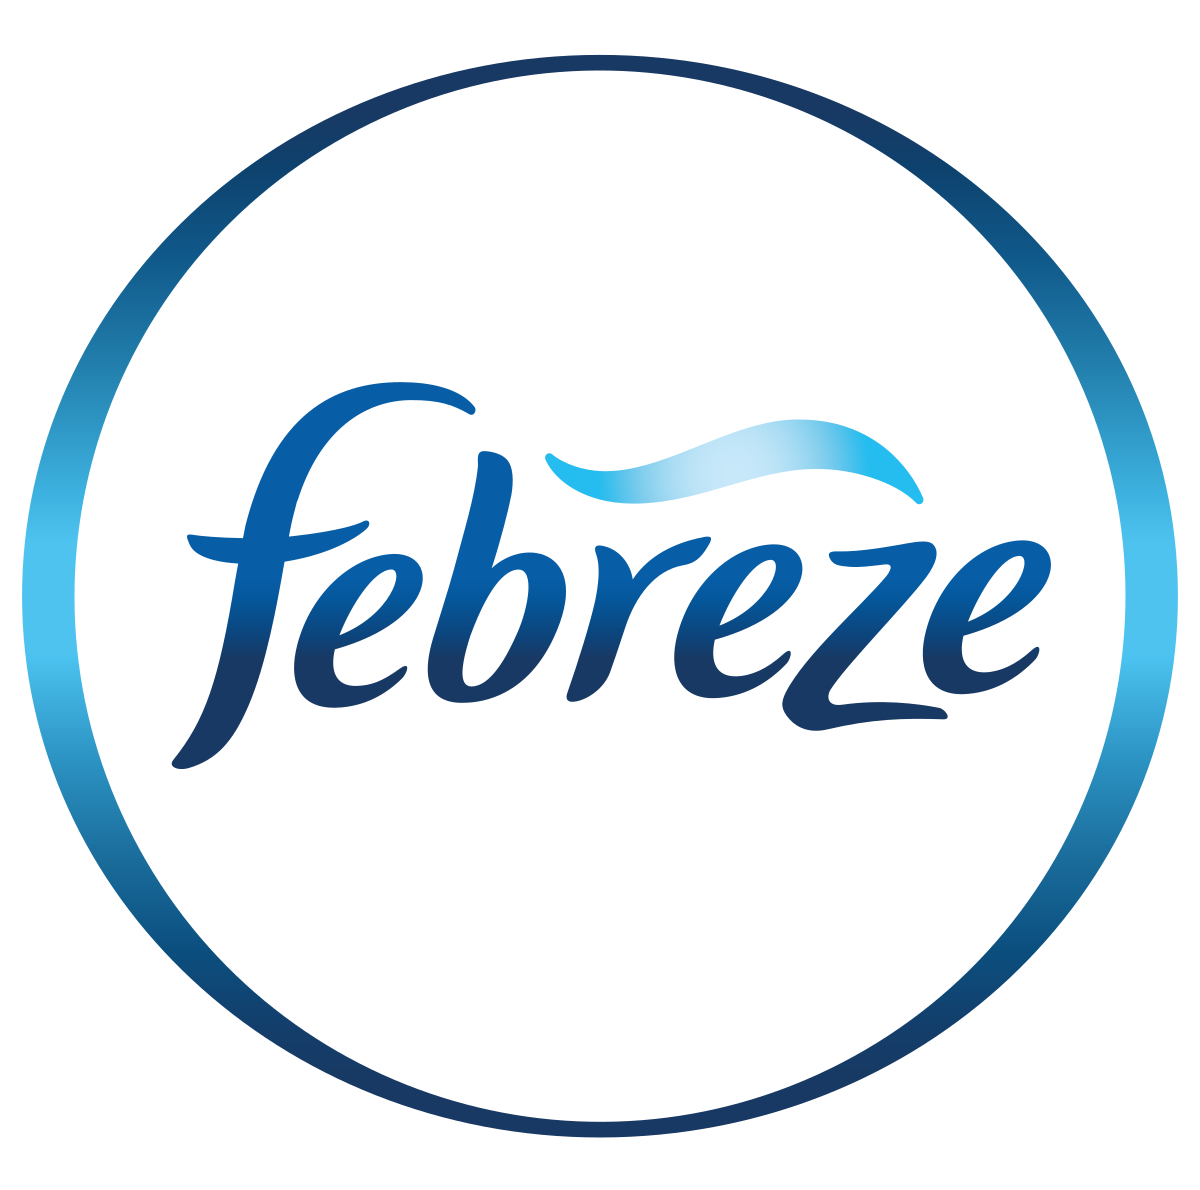 Febreeze